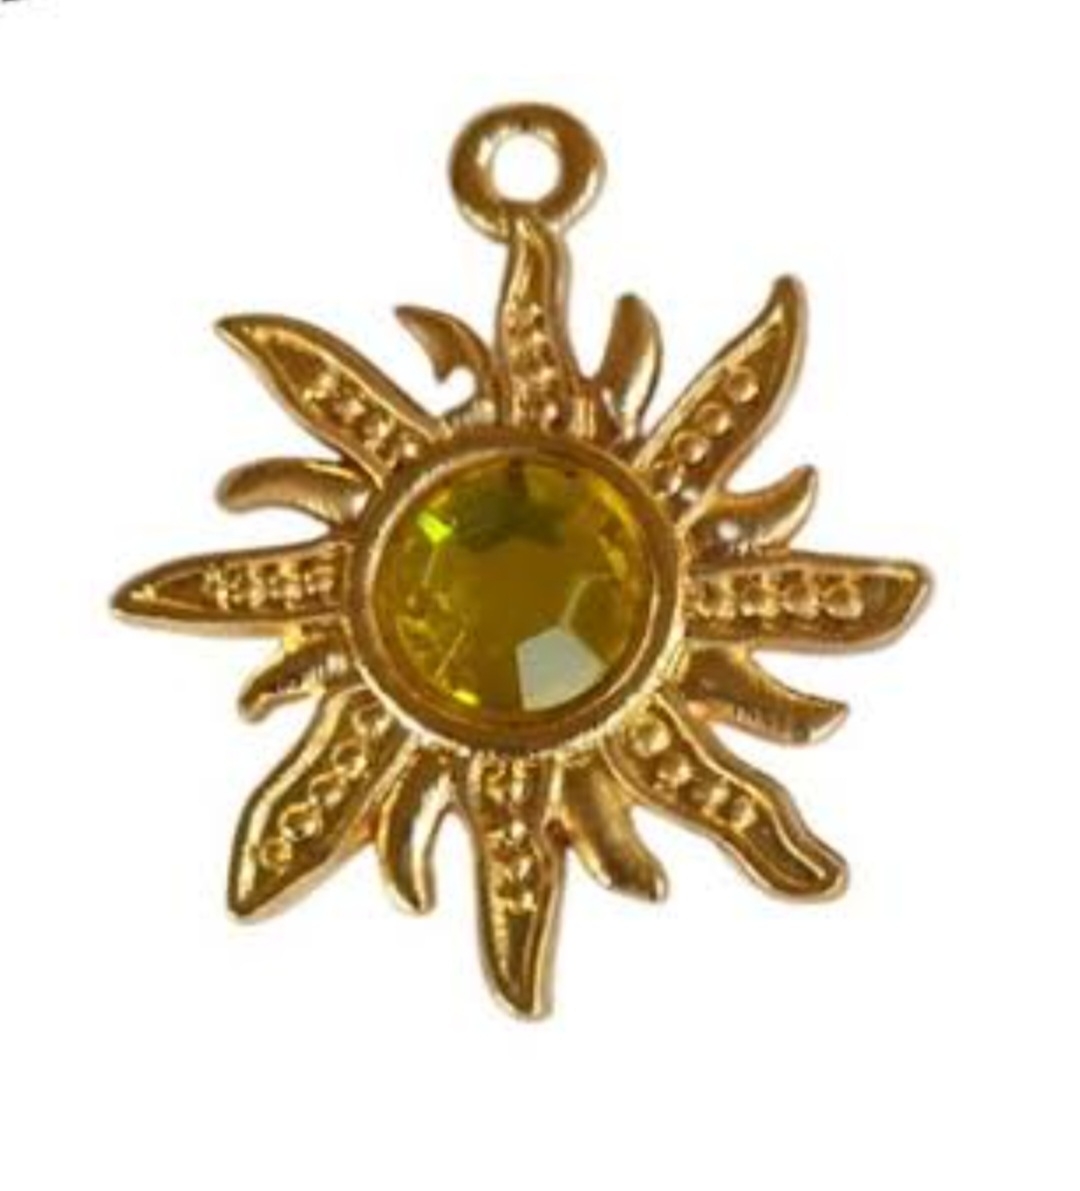 Sol- Representando energia e boa sorte, é frequentemente usado como amuleto em joias e artefatos religiosos. Associado a luz, calor e vida, está ligado ao renascimento e à prosperidade em diversas culturas. Em algumas tradições, rituais ao sol nascente são vistos como formas de atrair energia positiva. Reprodução: Flipar